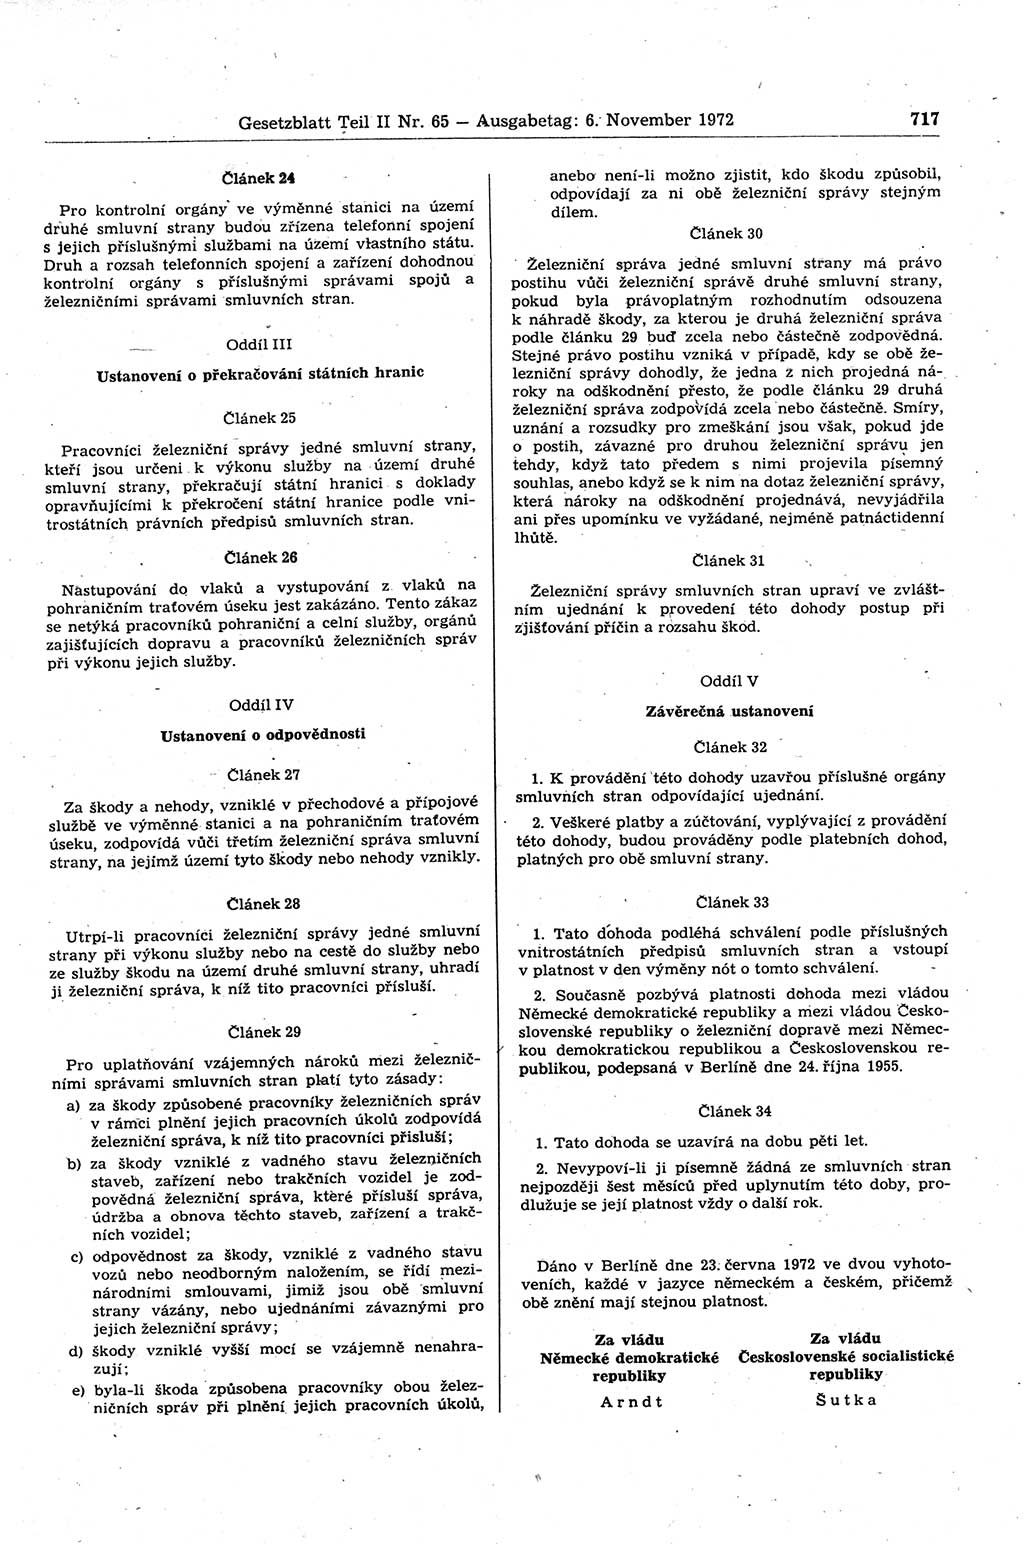 Gesetzblatt (GBl.) der Deutschen Demokratischen Republik (DDR) Teil ⅠⅠ 1972, Seite 717 (GBl. DDR ⅠⅠ 1972, S. 717)